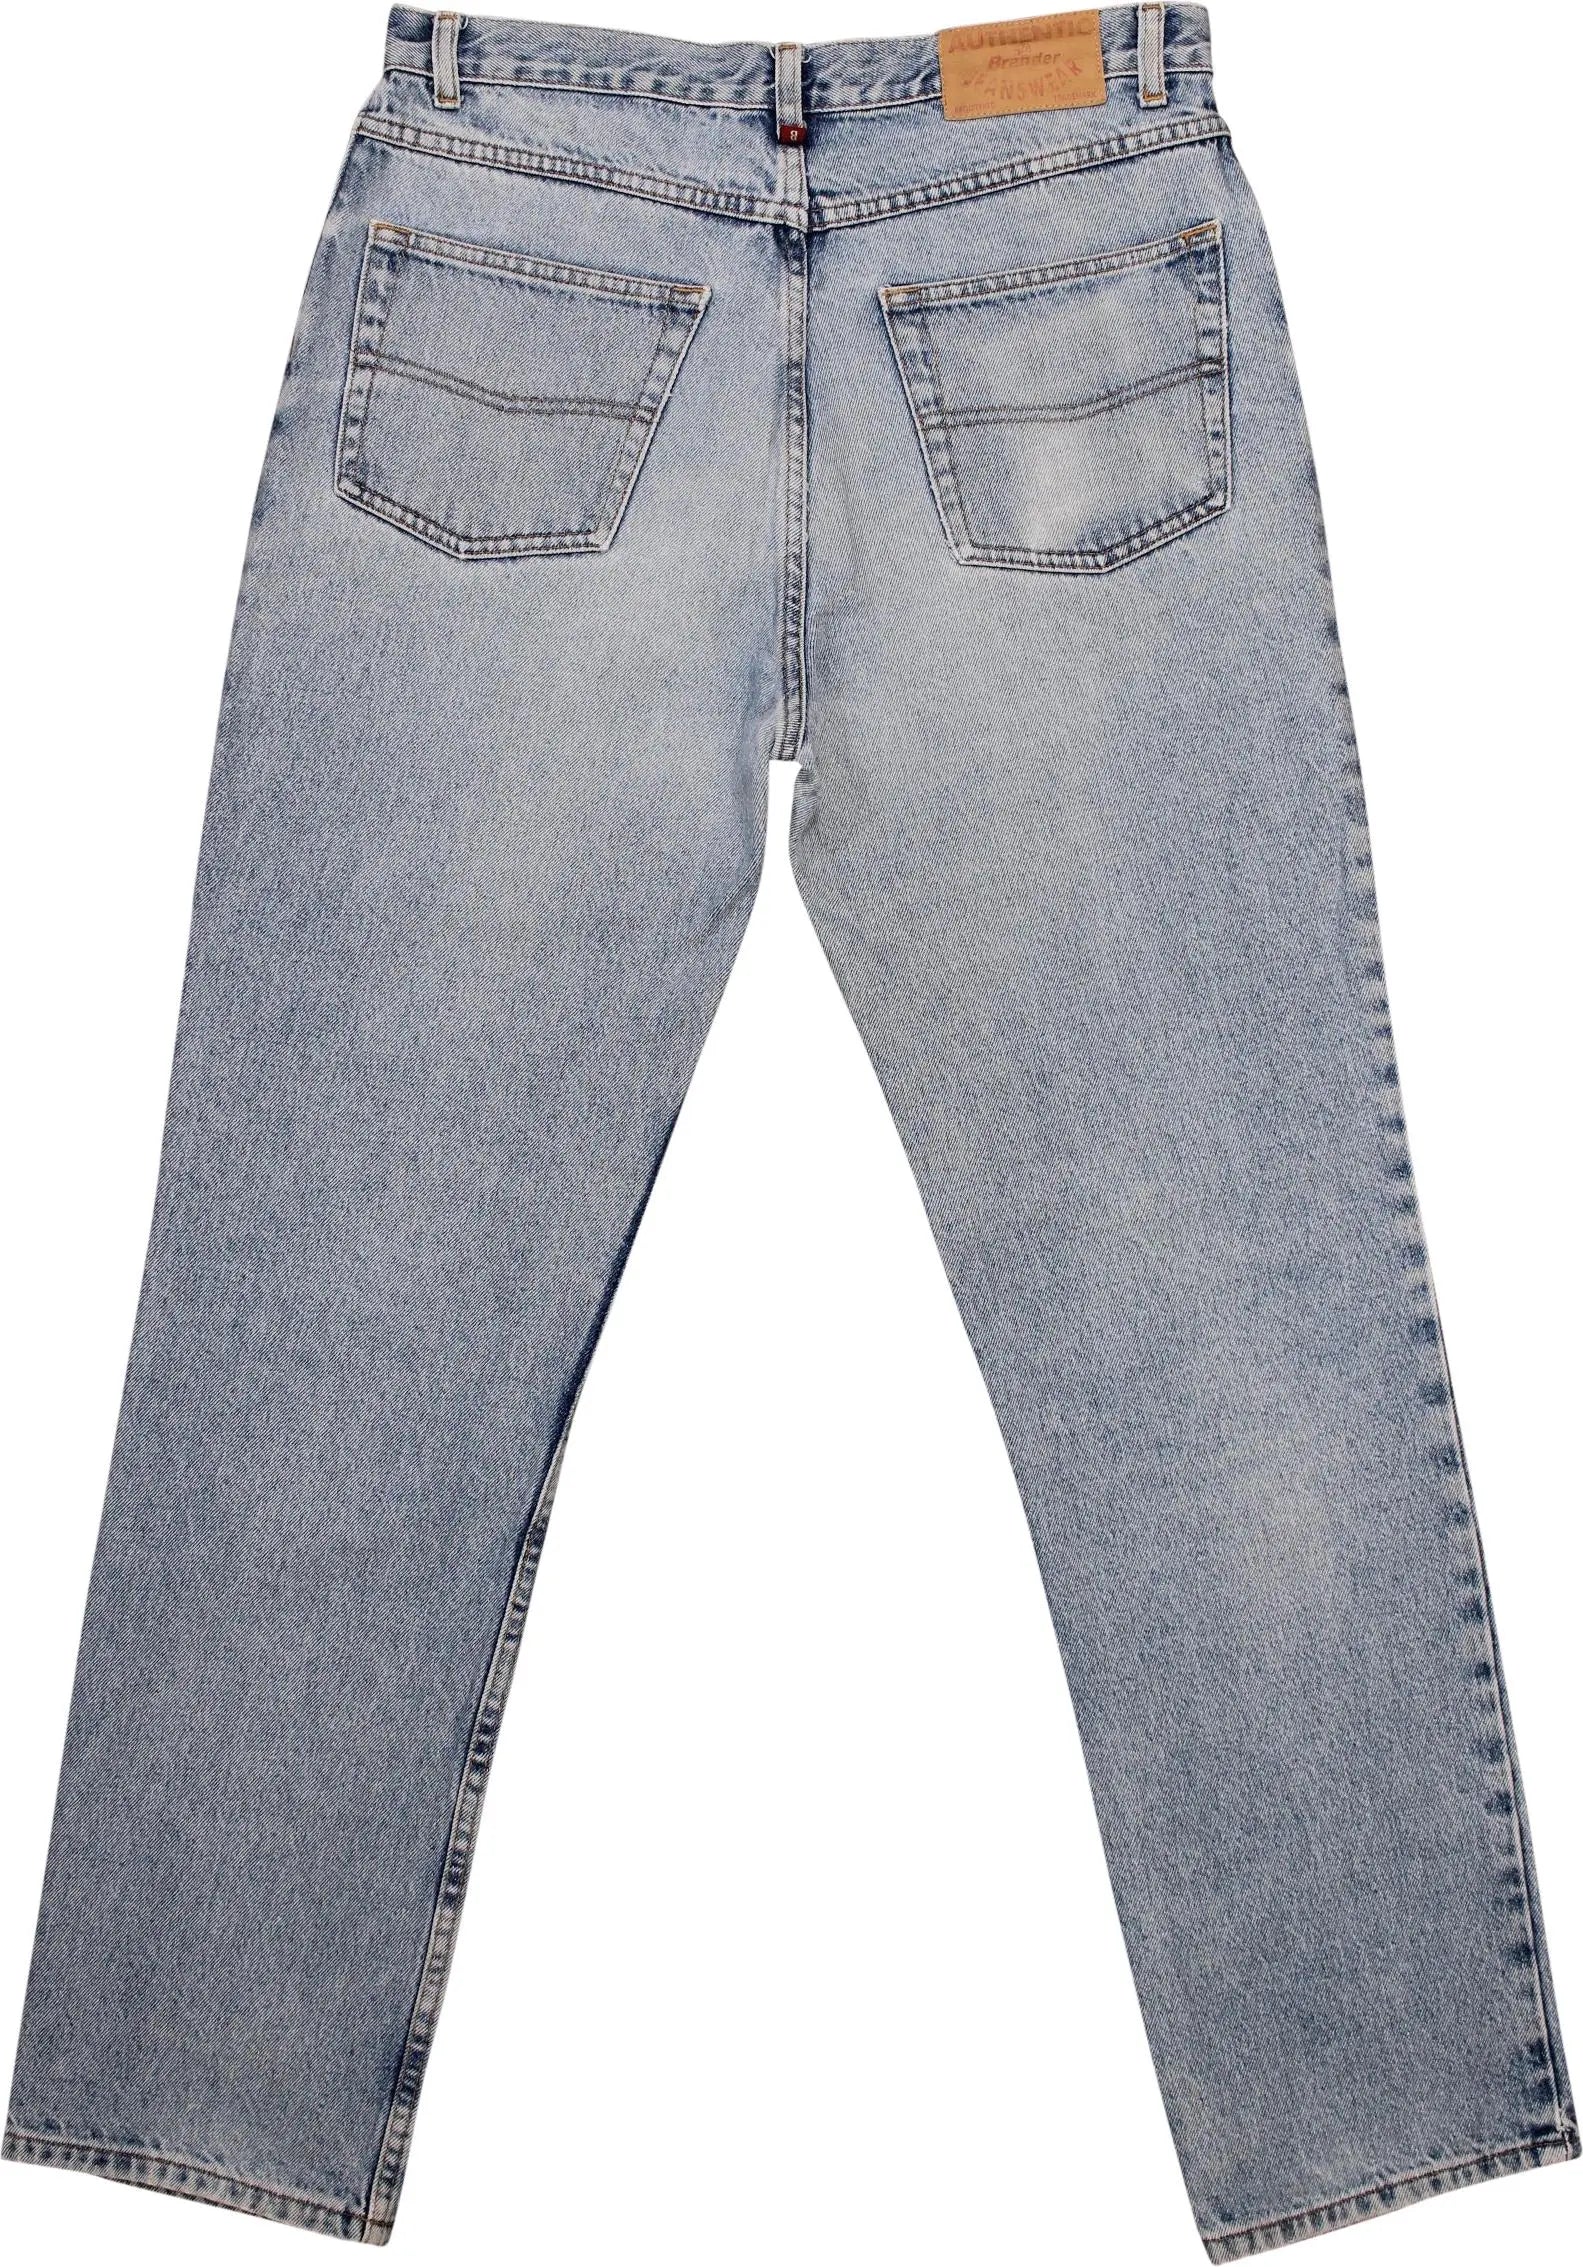 Brander - Brander Jeans- ThriftTale.com - Vintage and second handclothing